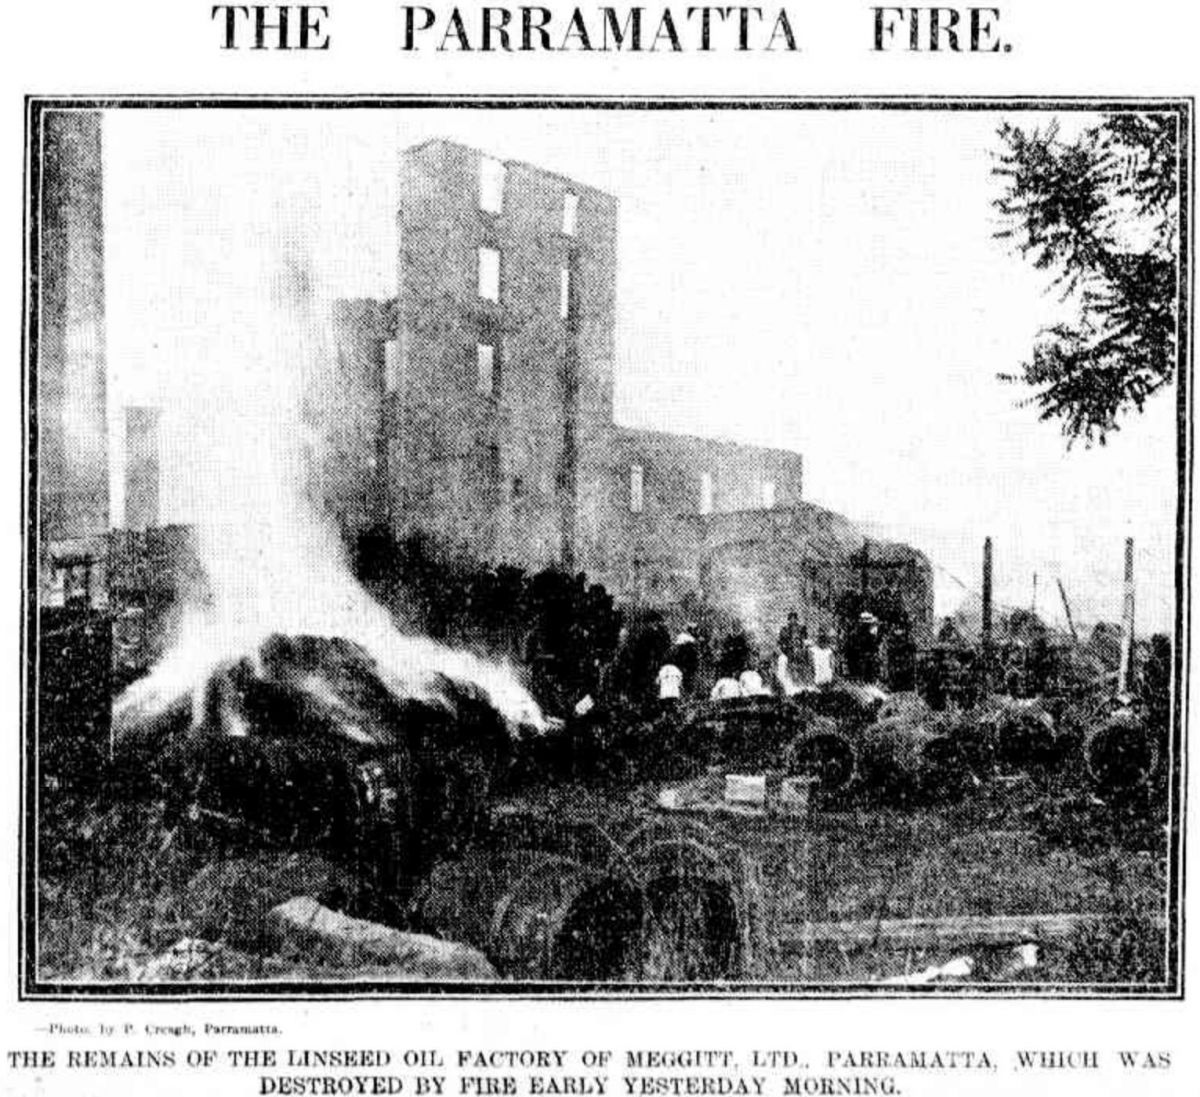 The Parramatta fire